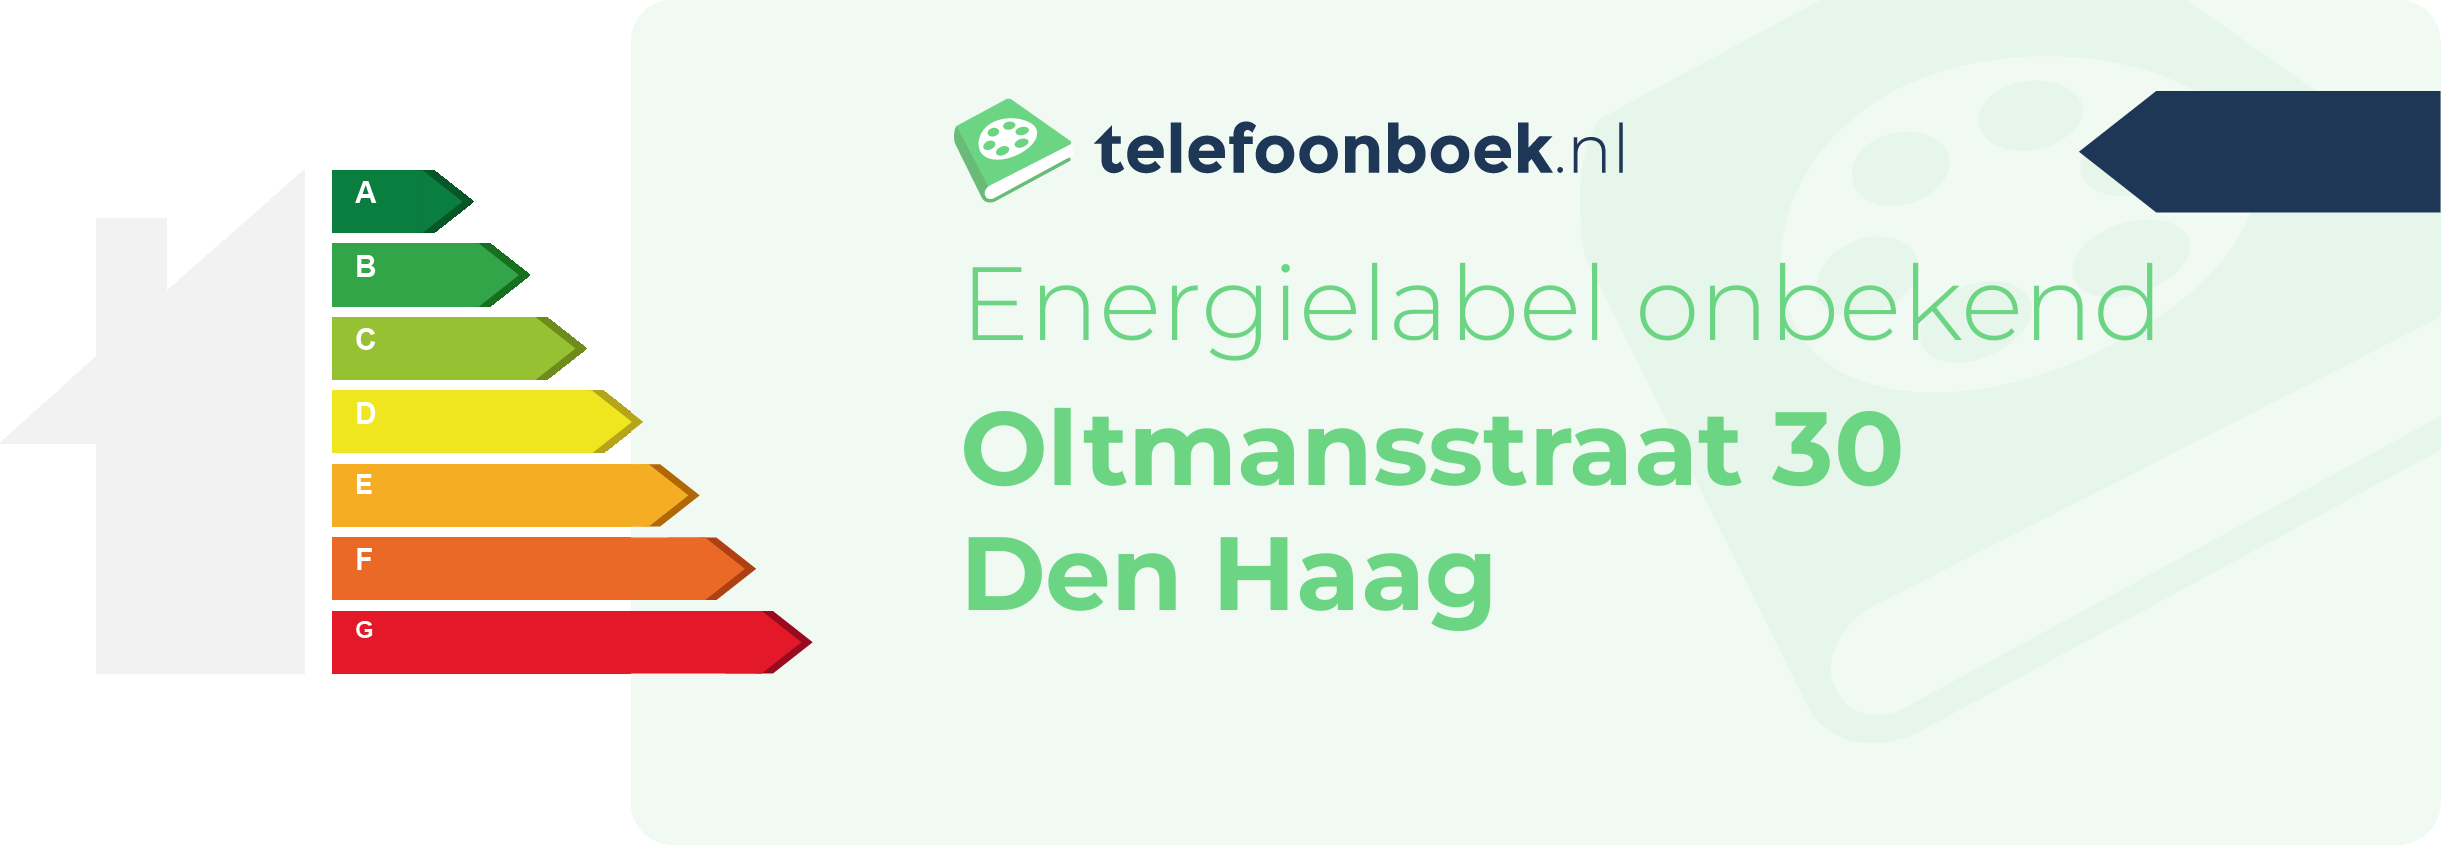 Energielabel Oltmansstraat 30 Den Haag